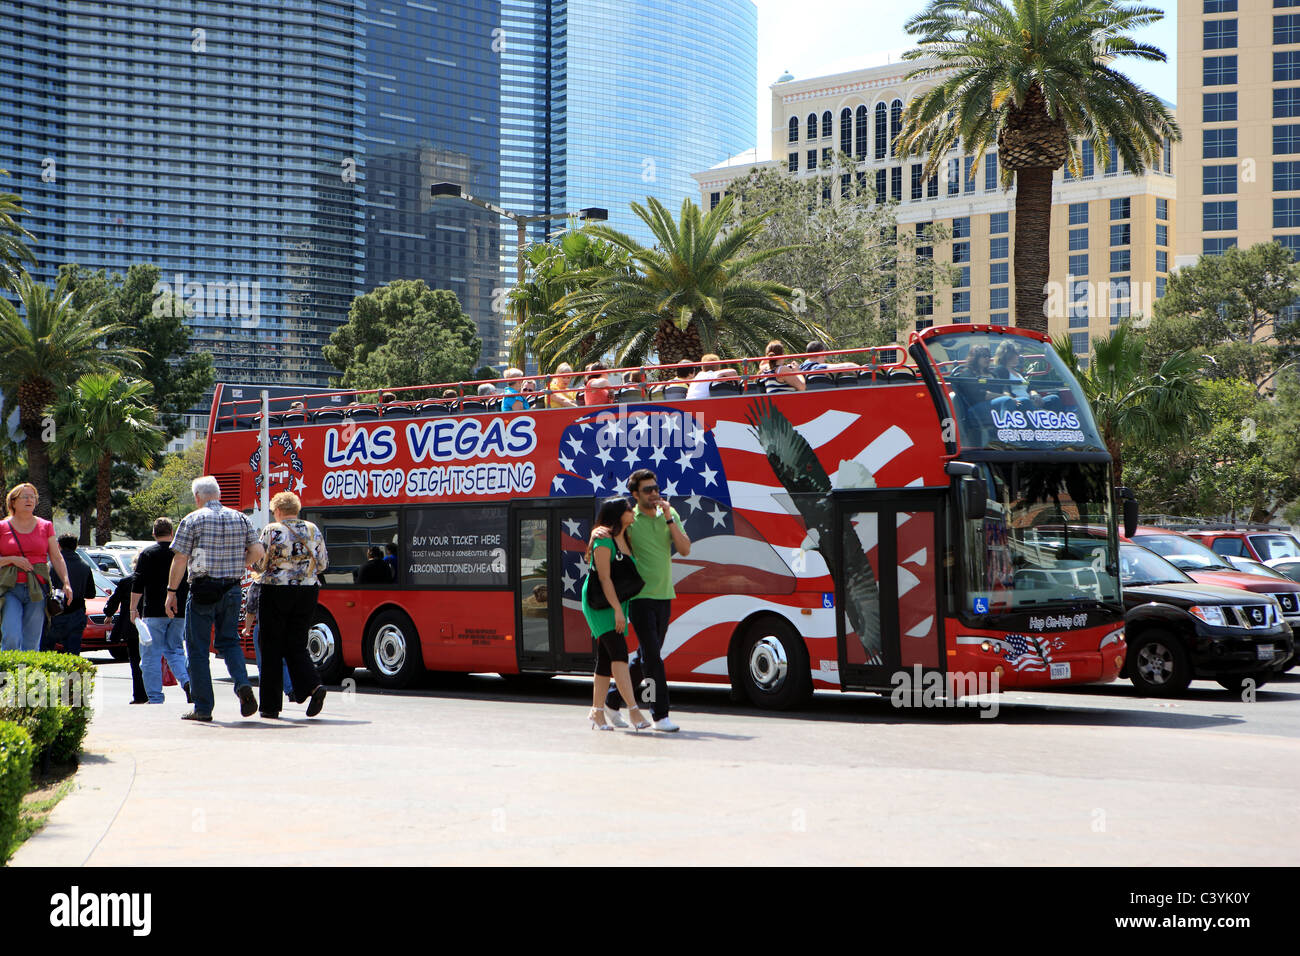 Las Vegas sightseeing tour en bus à toit ouvert Banque D'Images